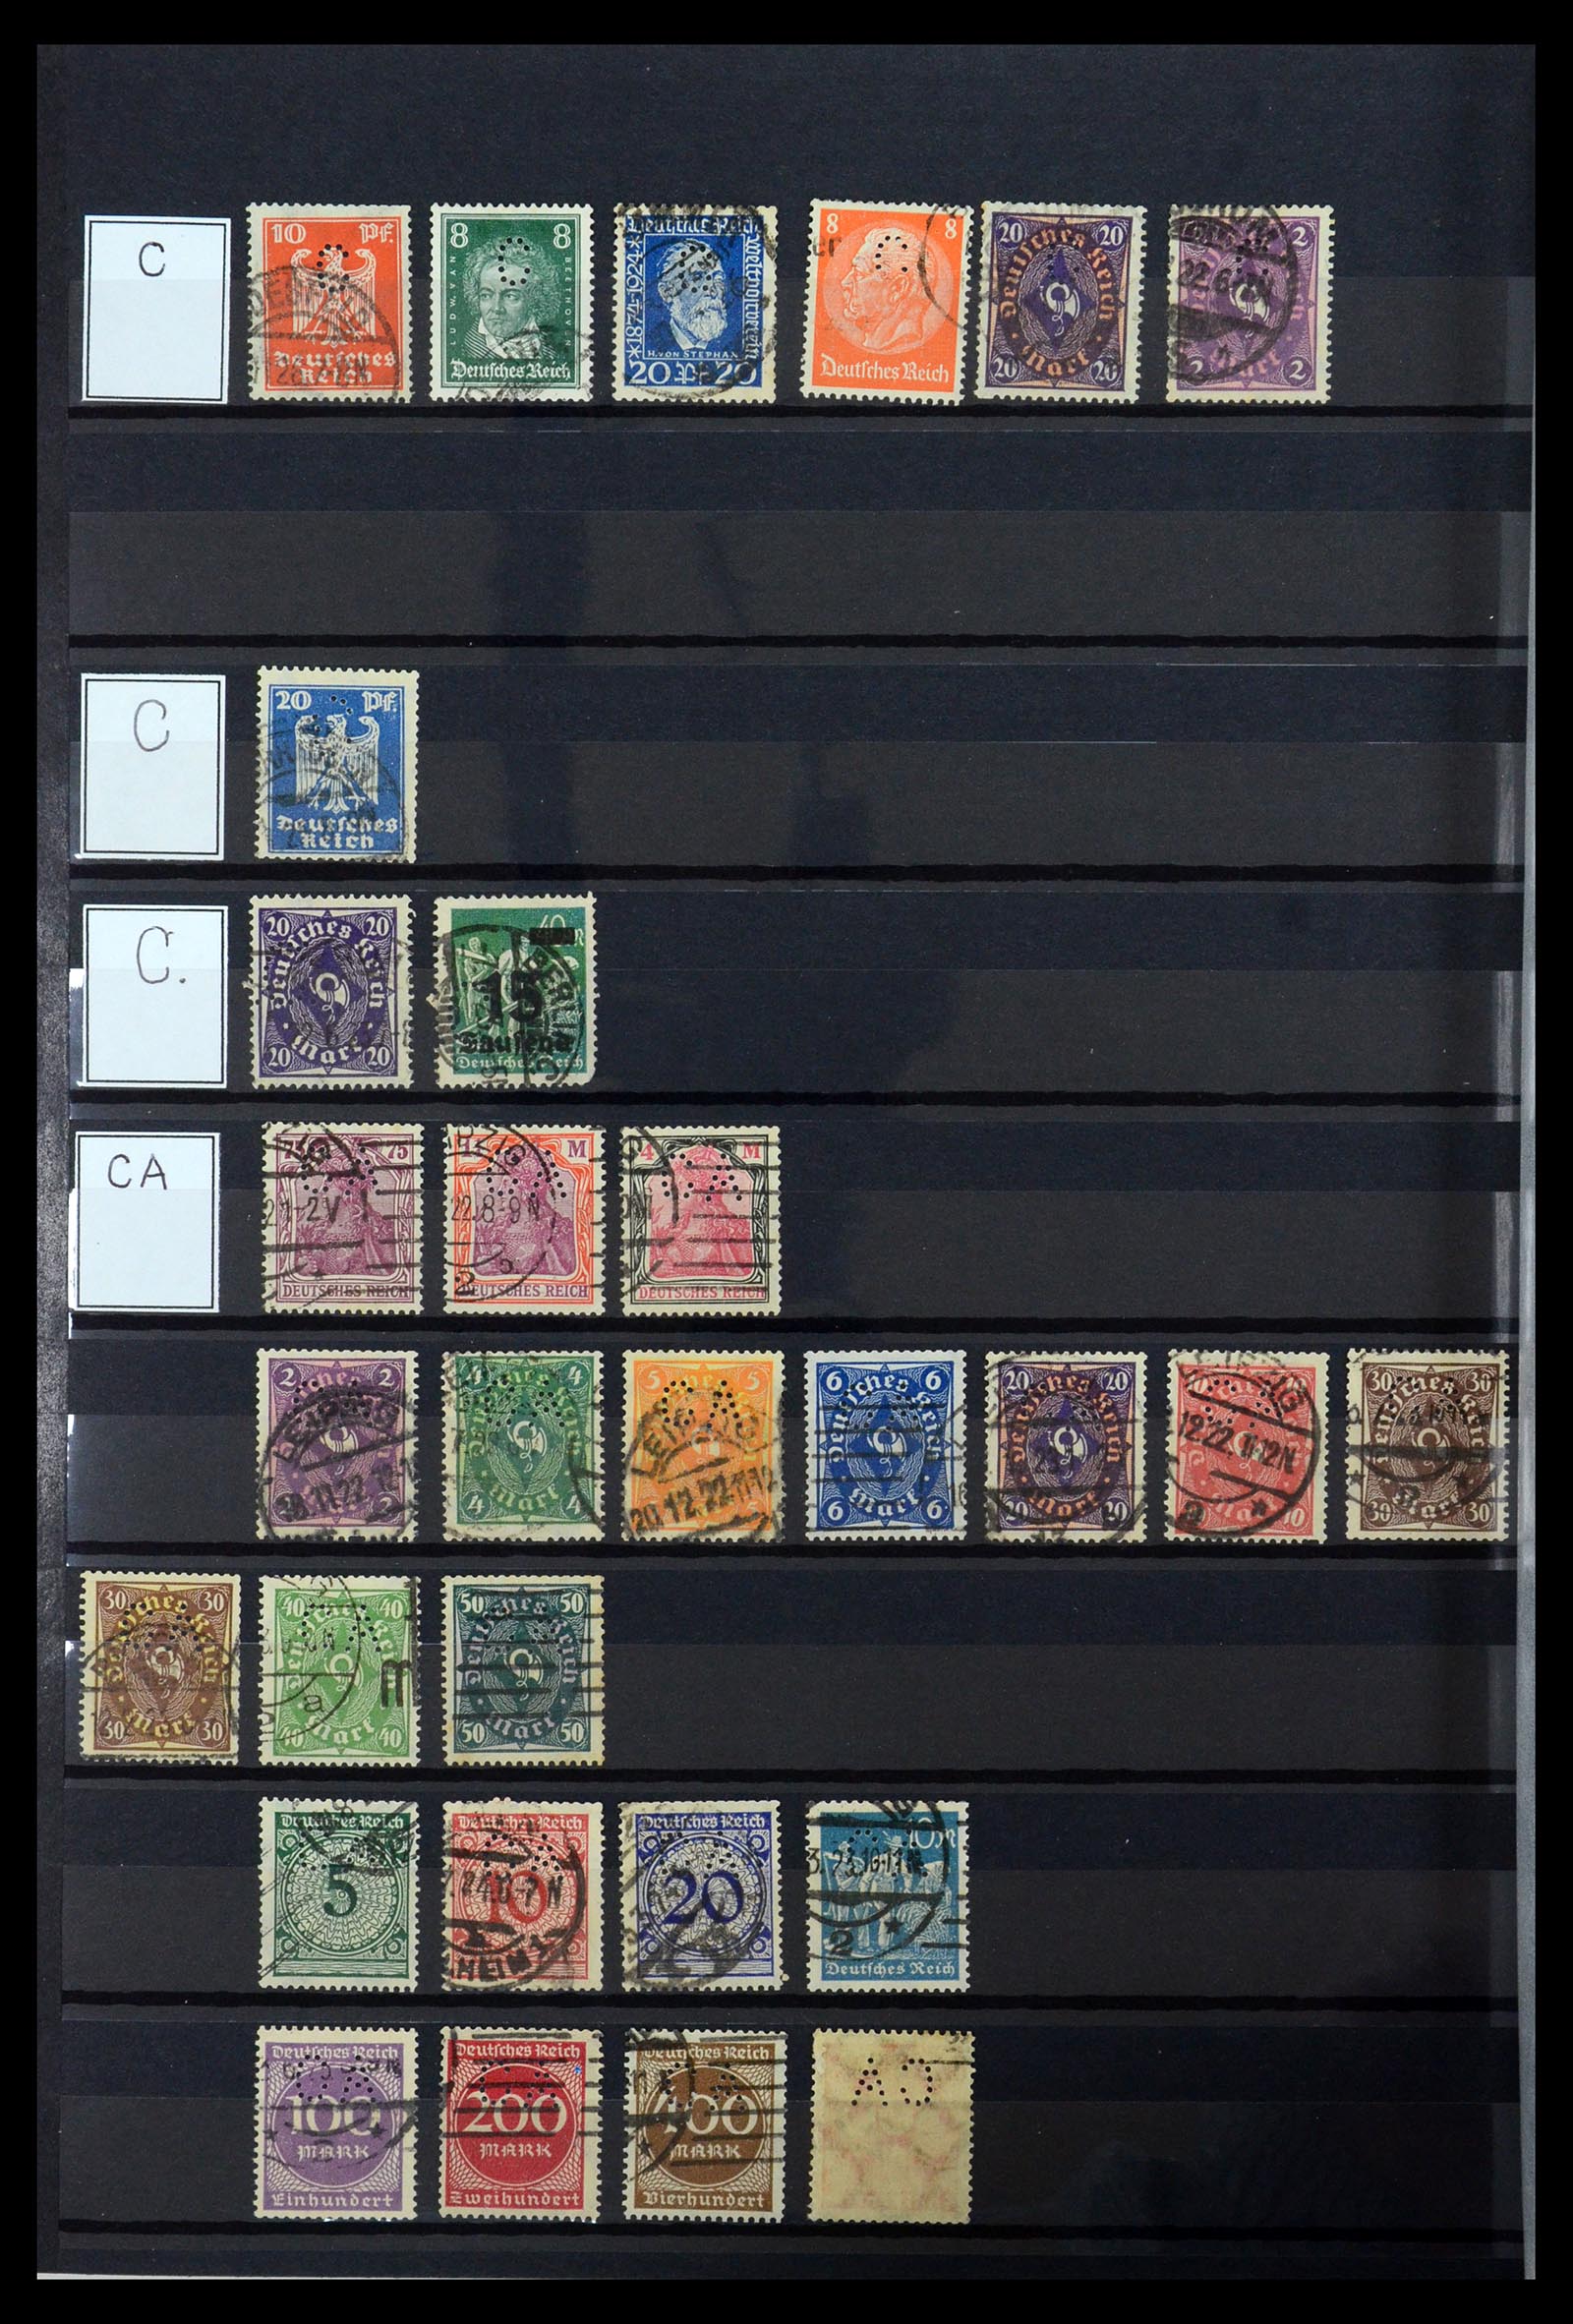 36405 054 - Stamp collection 36405 German Reich perfins 1880-1945.